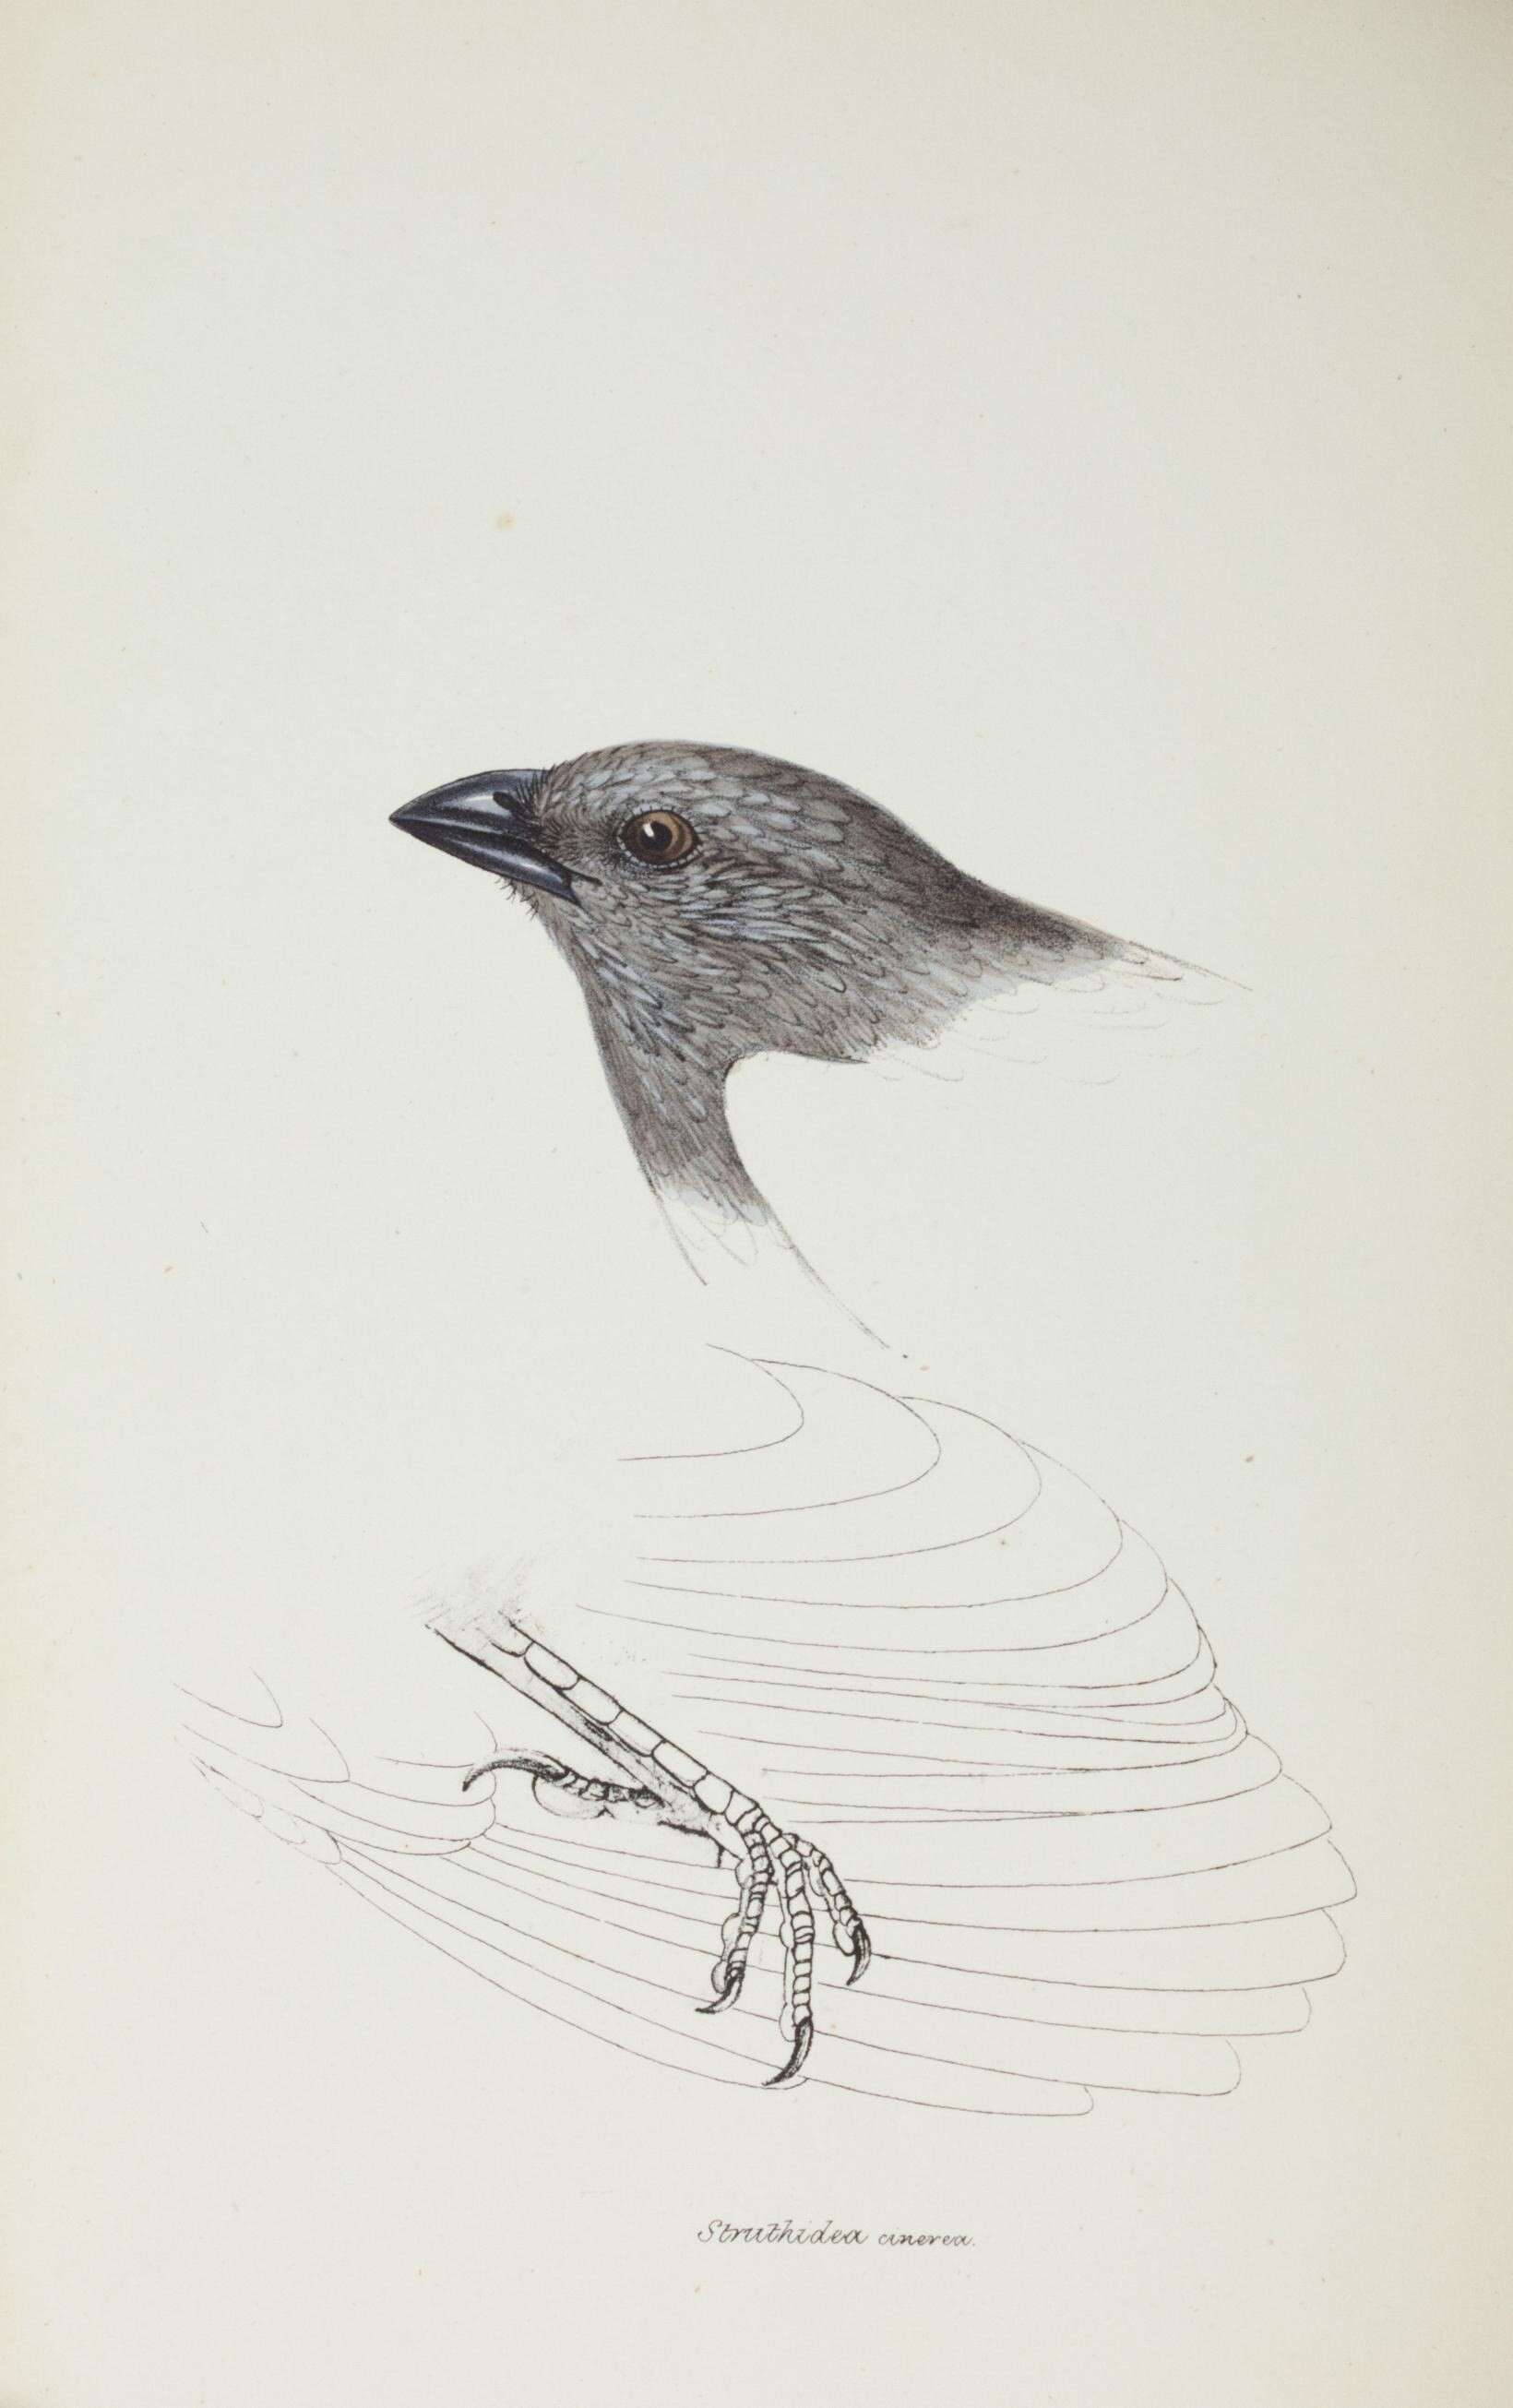 Sivun Struthidea Gould 1837 kuva